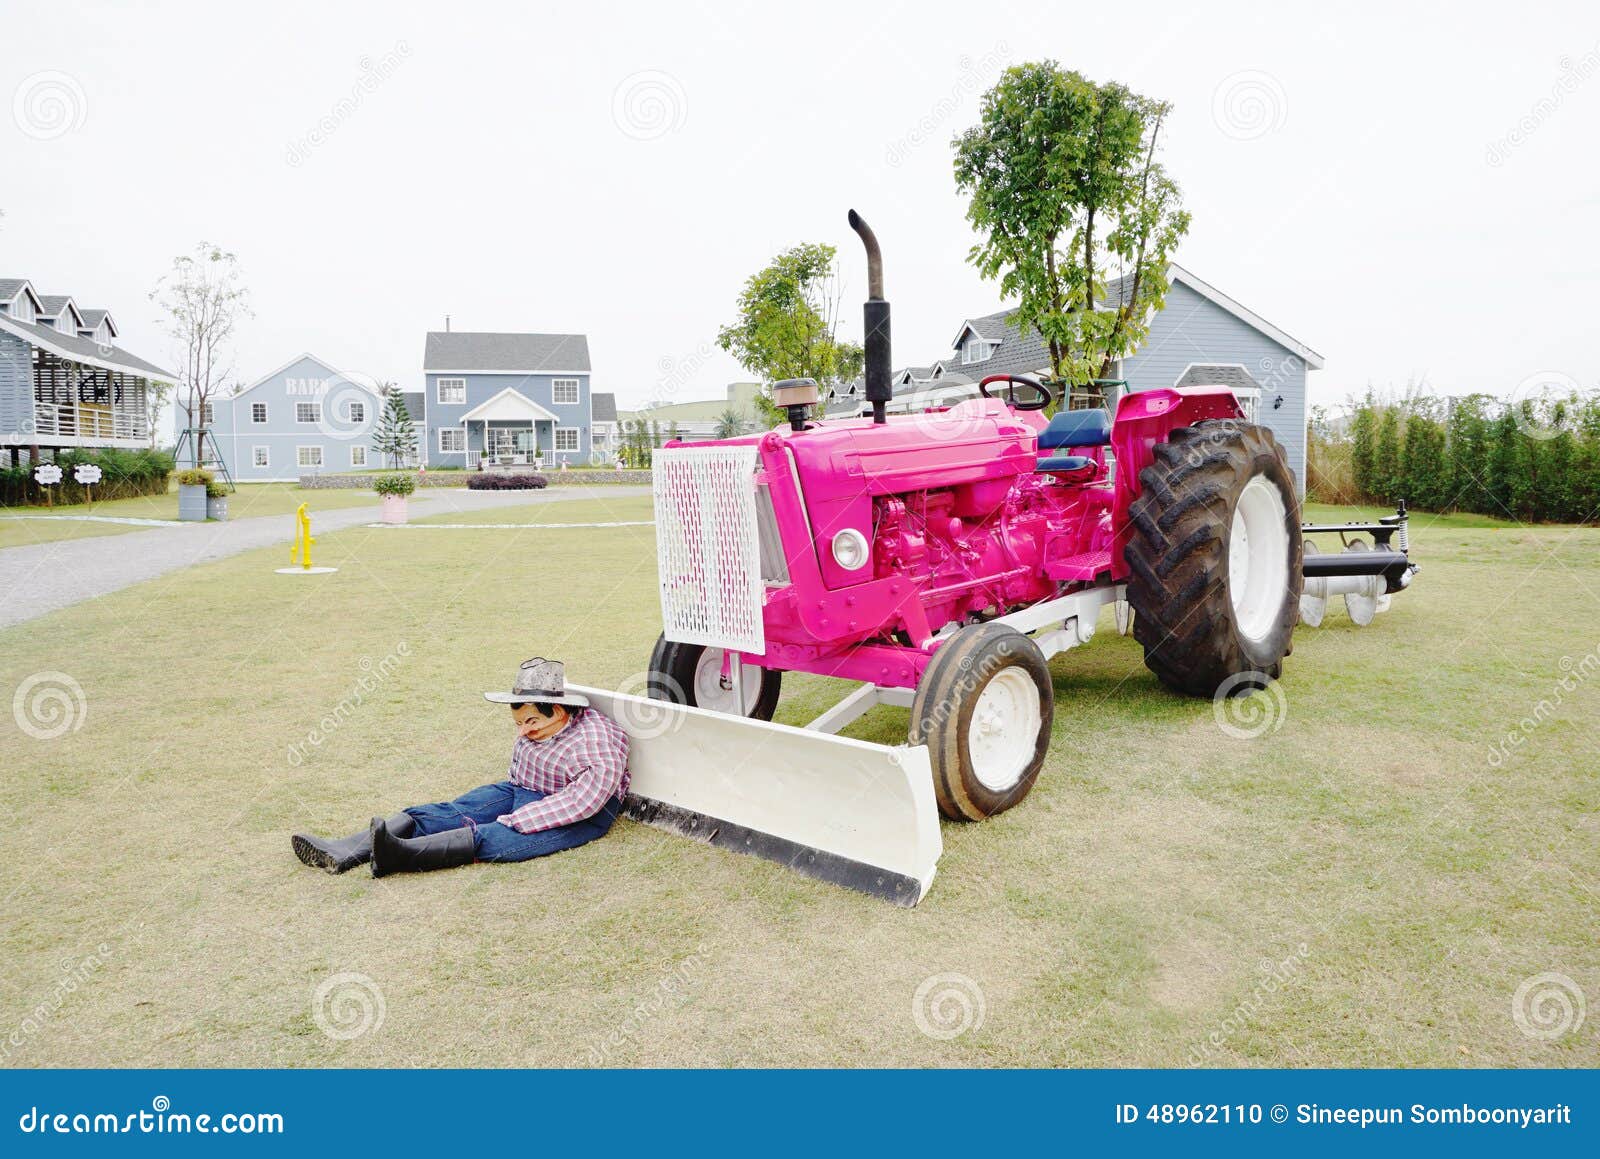 fricción Desarrollado Tractor de Granja con apertura del capó-disponible en color de rosa, Toyland 